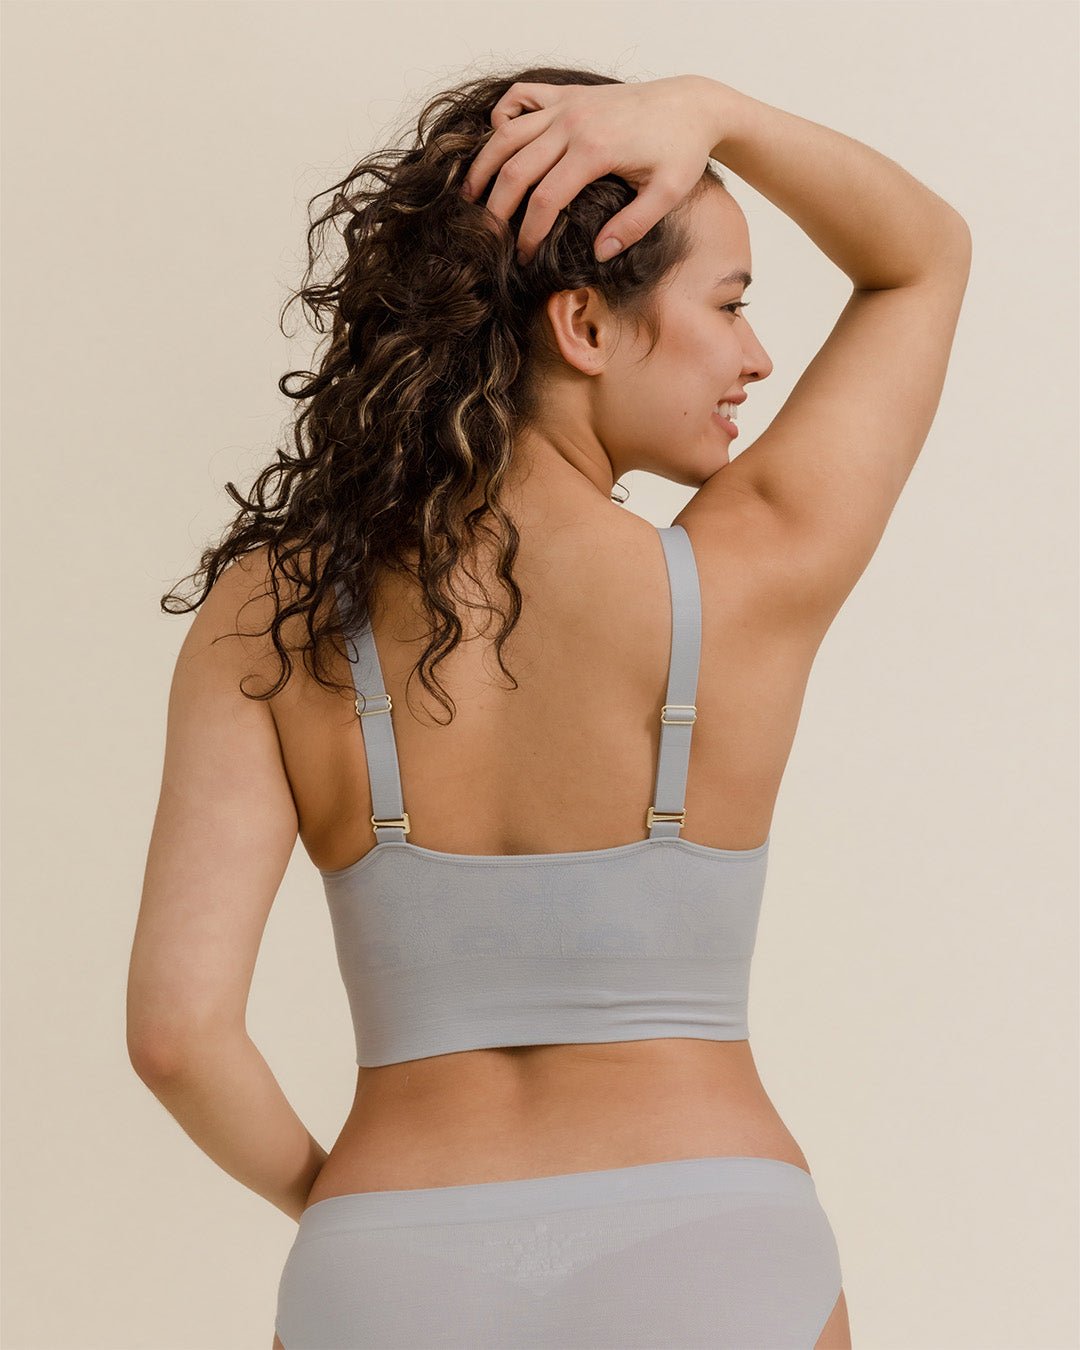 BRANWYN Performance Innerwear - Weekend essentials 👉🏻 bras that